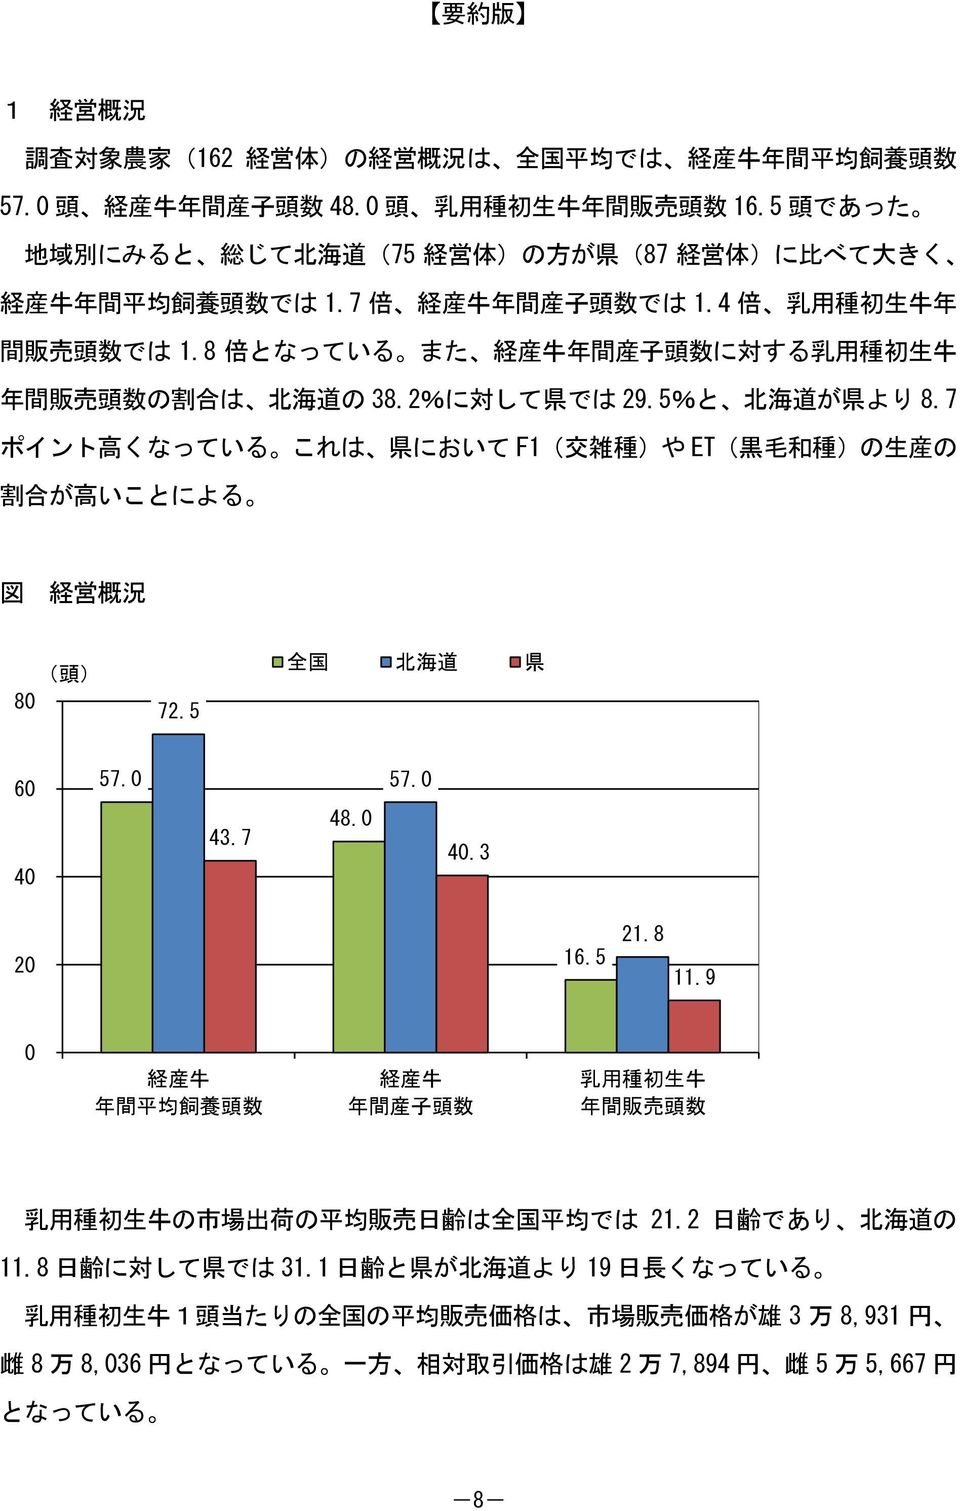 8 倍 となっている また 経 産 牛 年 間 産 子 頭 数 に 対 する 乳 用 種 初 生 牛 年 間 販 売 頭 数 の 割 合 は 北 海 道 の 38.2%に 対 して 県 では 29.5%と 北 海 道 が 県 より 8.